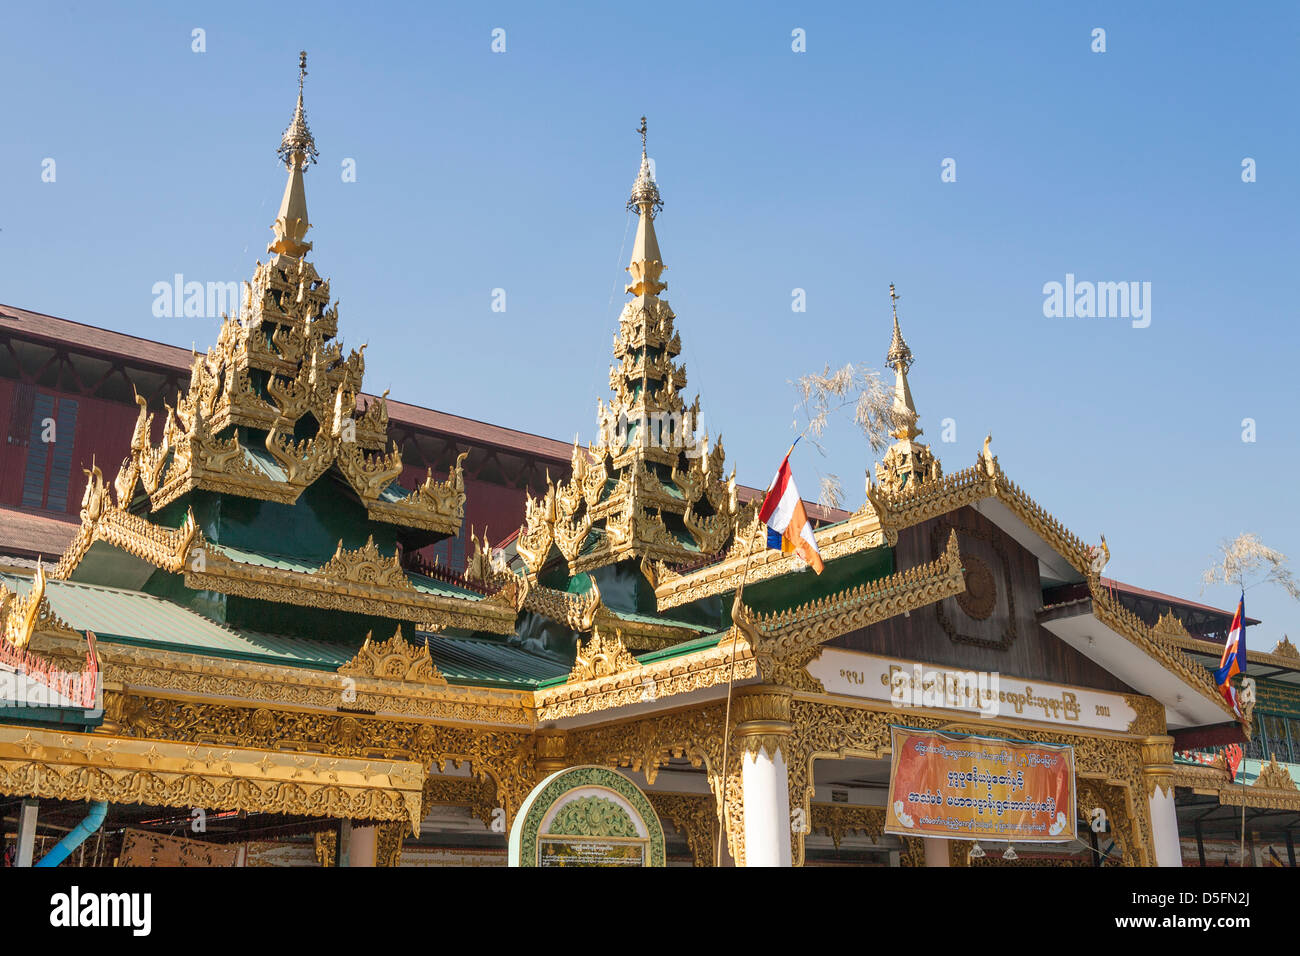 Chaukhtatgyi Pagoda, Yangon (Rangoon), Myanmar, (Burma) Stock Photo